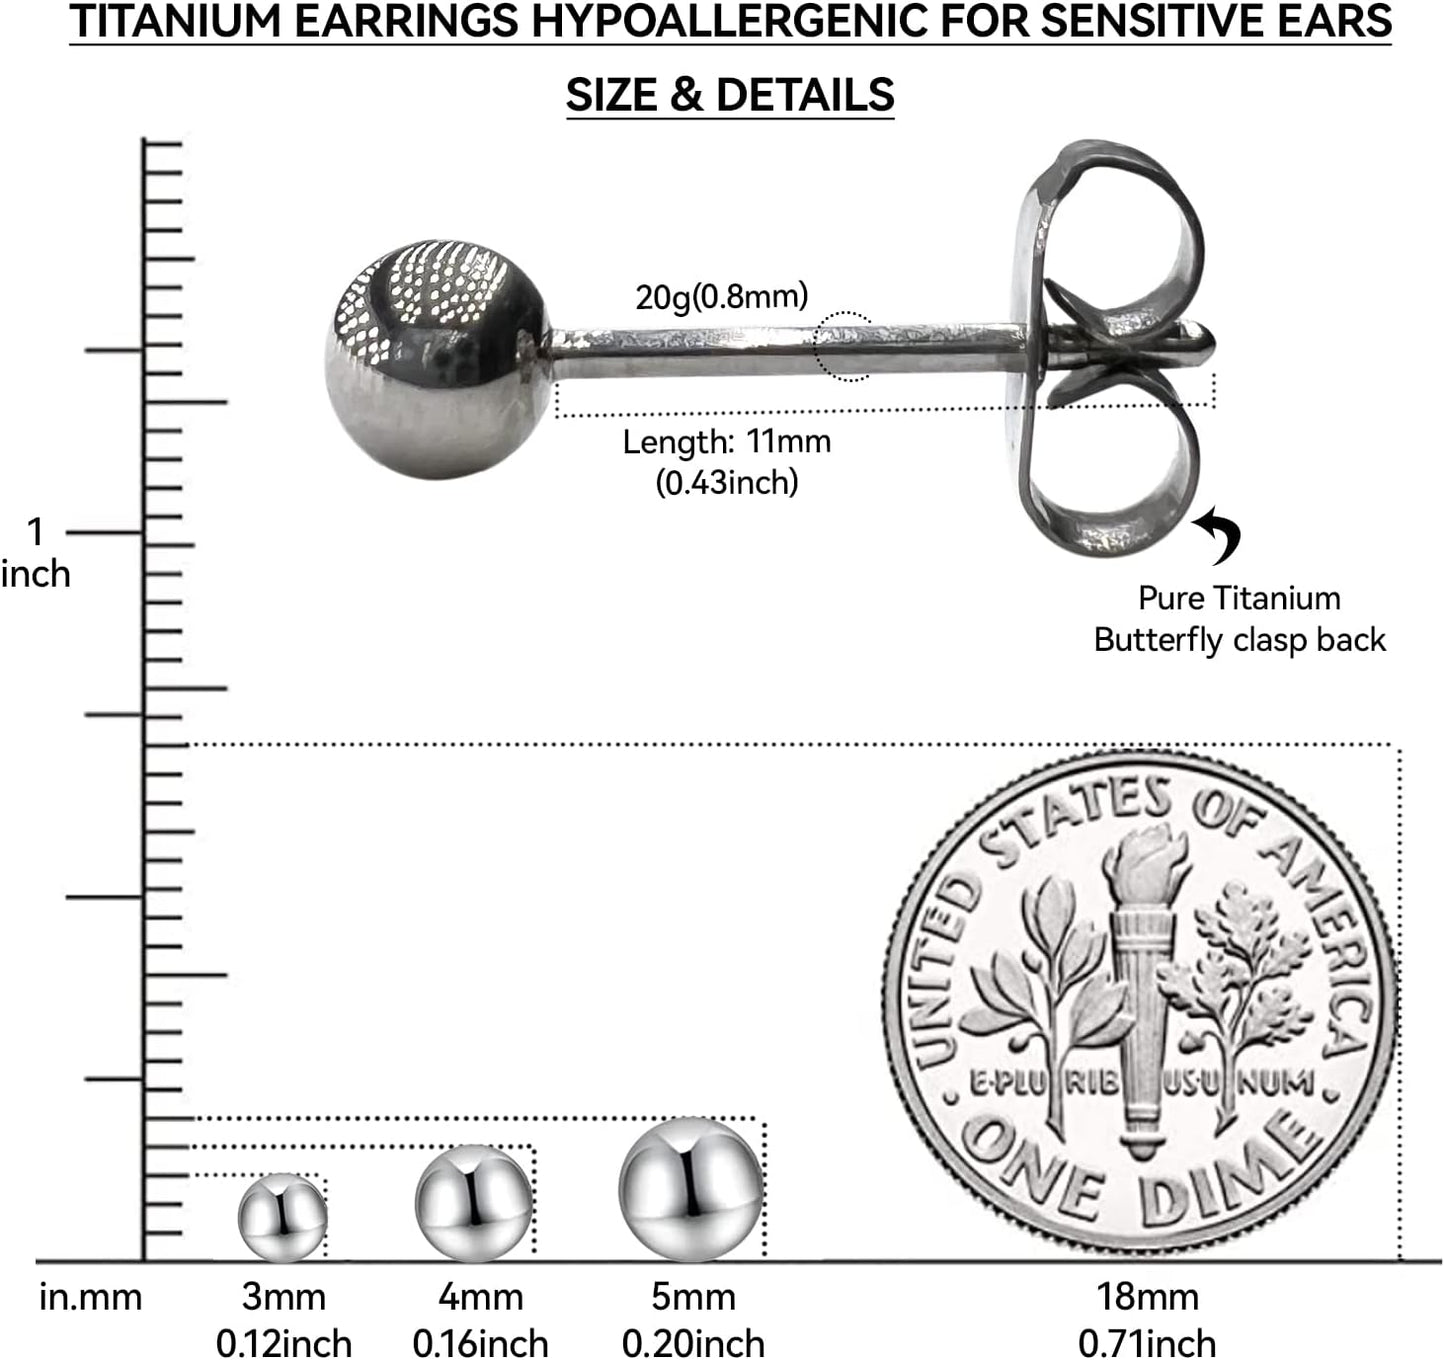 Pendientes de titanio G23, hipoalergénicos para mujeres, niñas, hombres, orejas sensibles, bola, pulido premium con parte trasera de titanio puro.